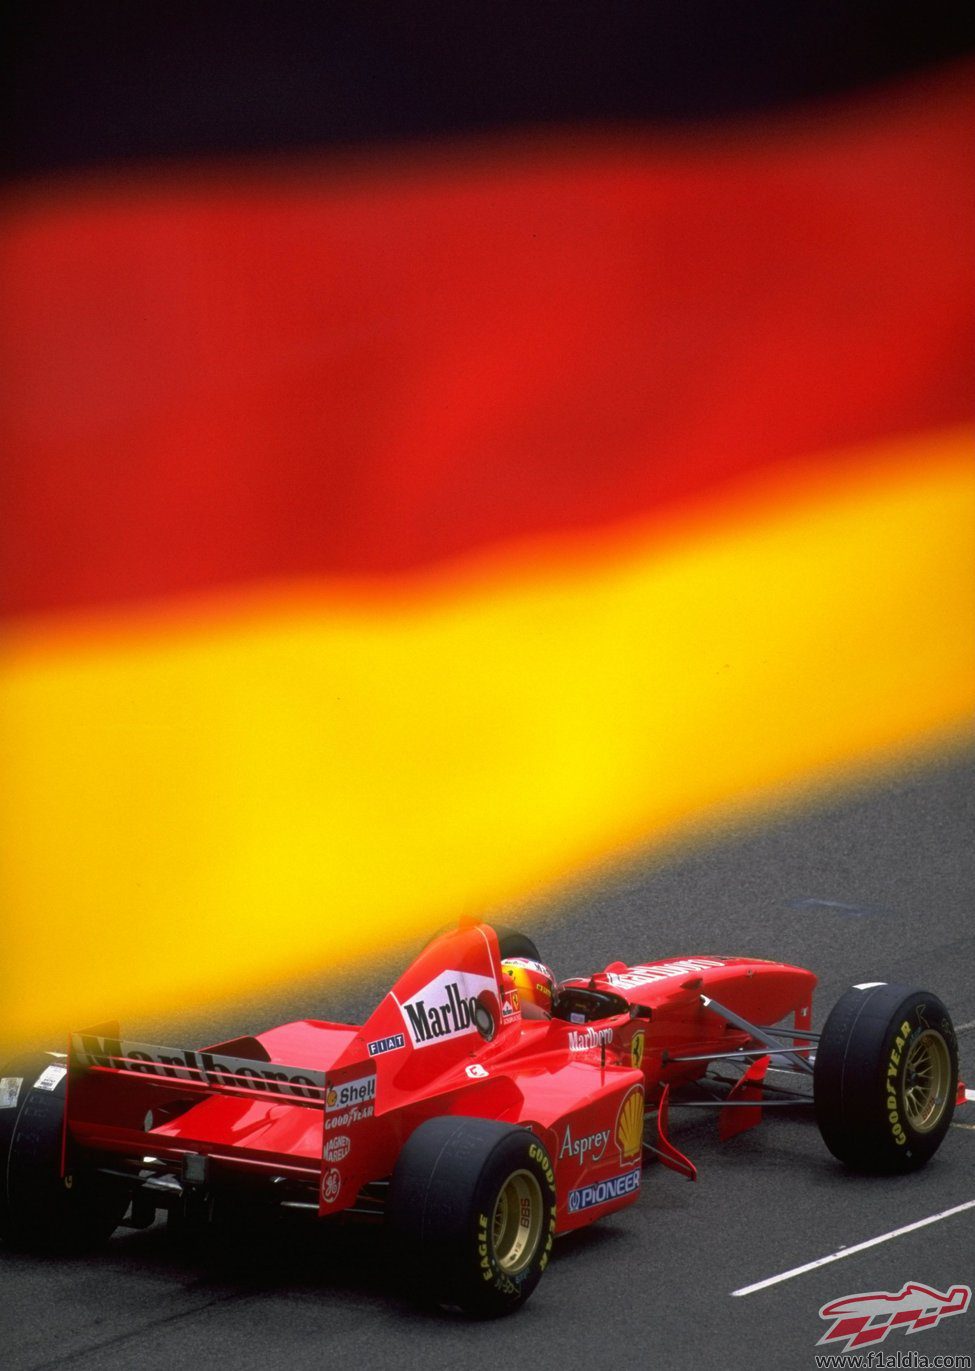 Racha de victorias con Ferrari en 1997